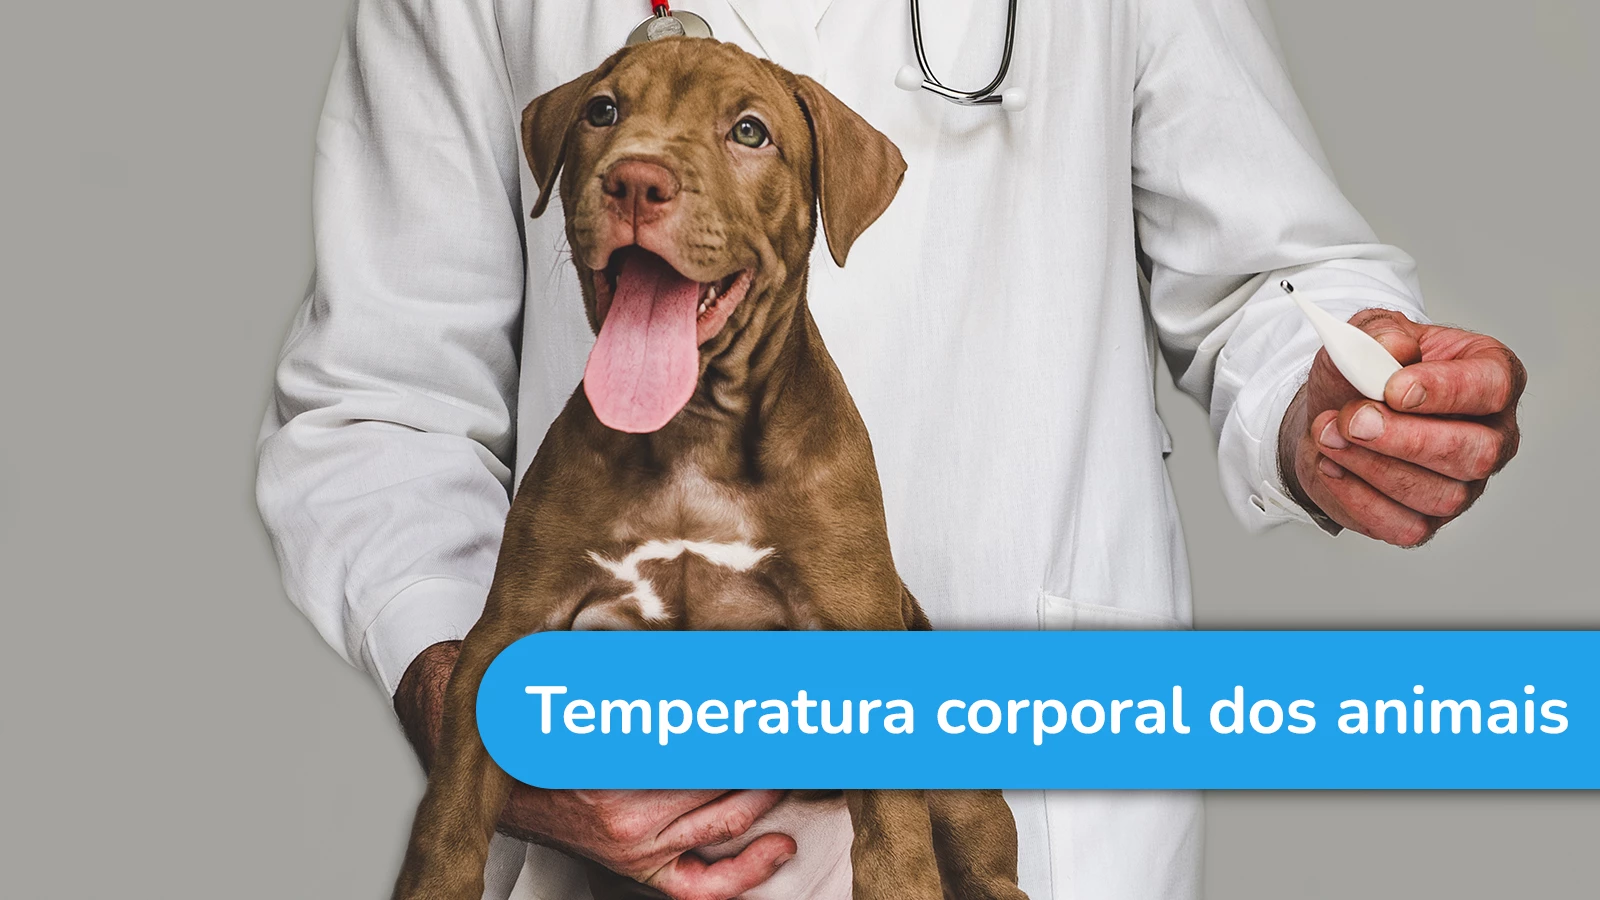 Os animais possuem a temperatura corporal como a dos humanos?